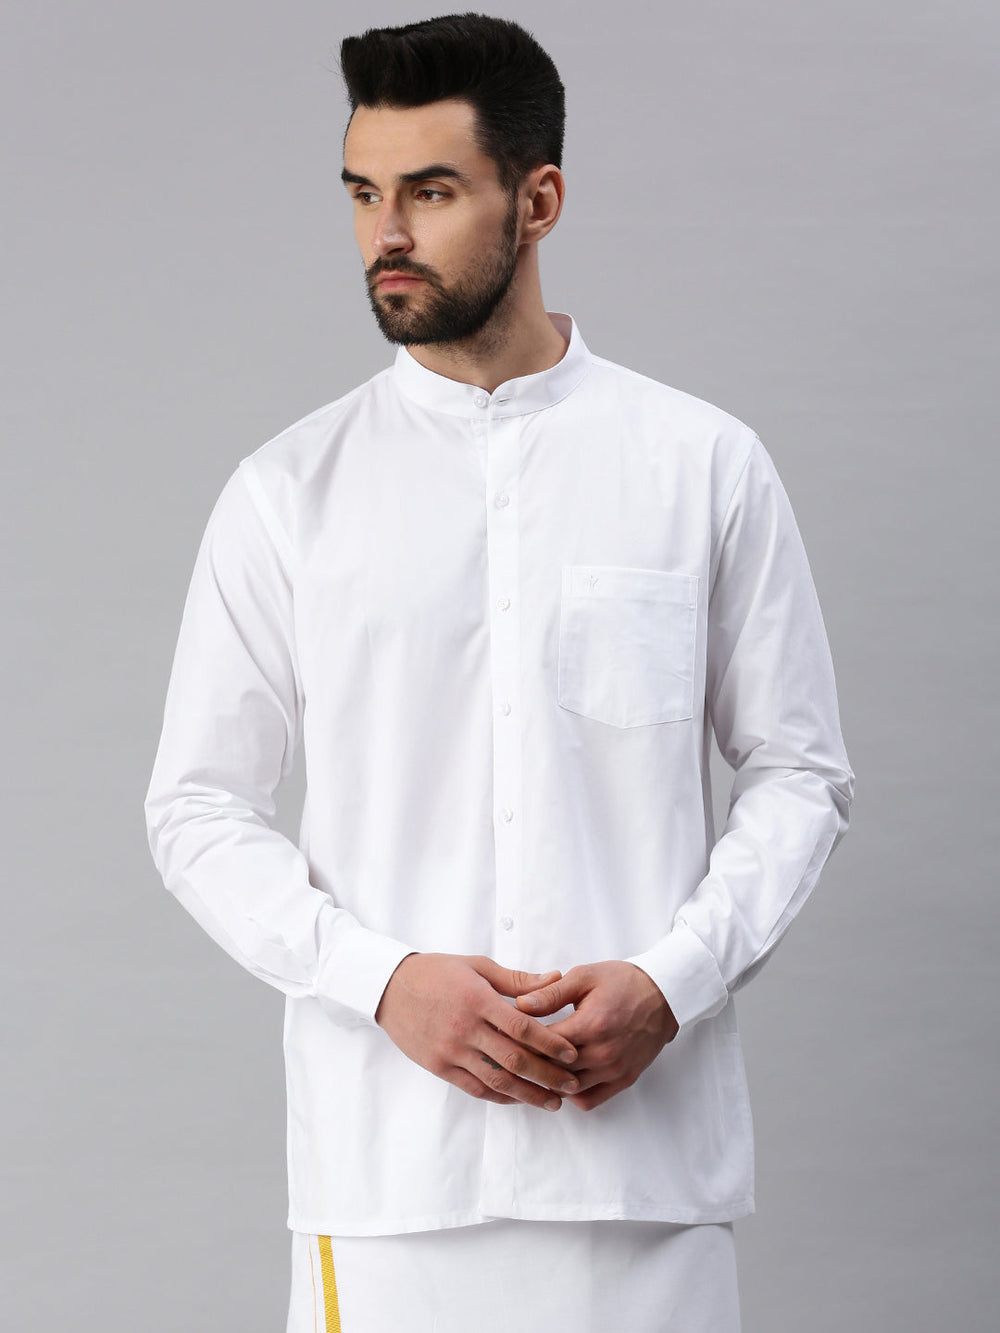 Buy Plus Size Men White Shirts | Ramraj Cotton